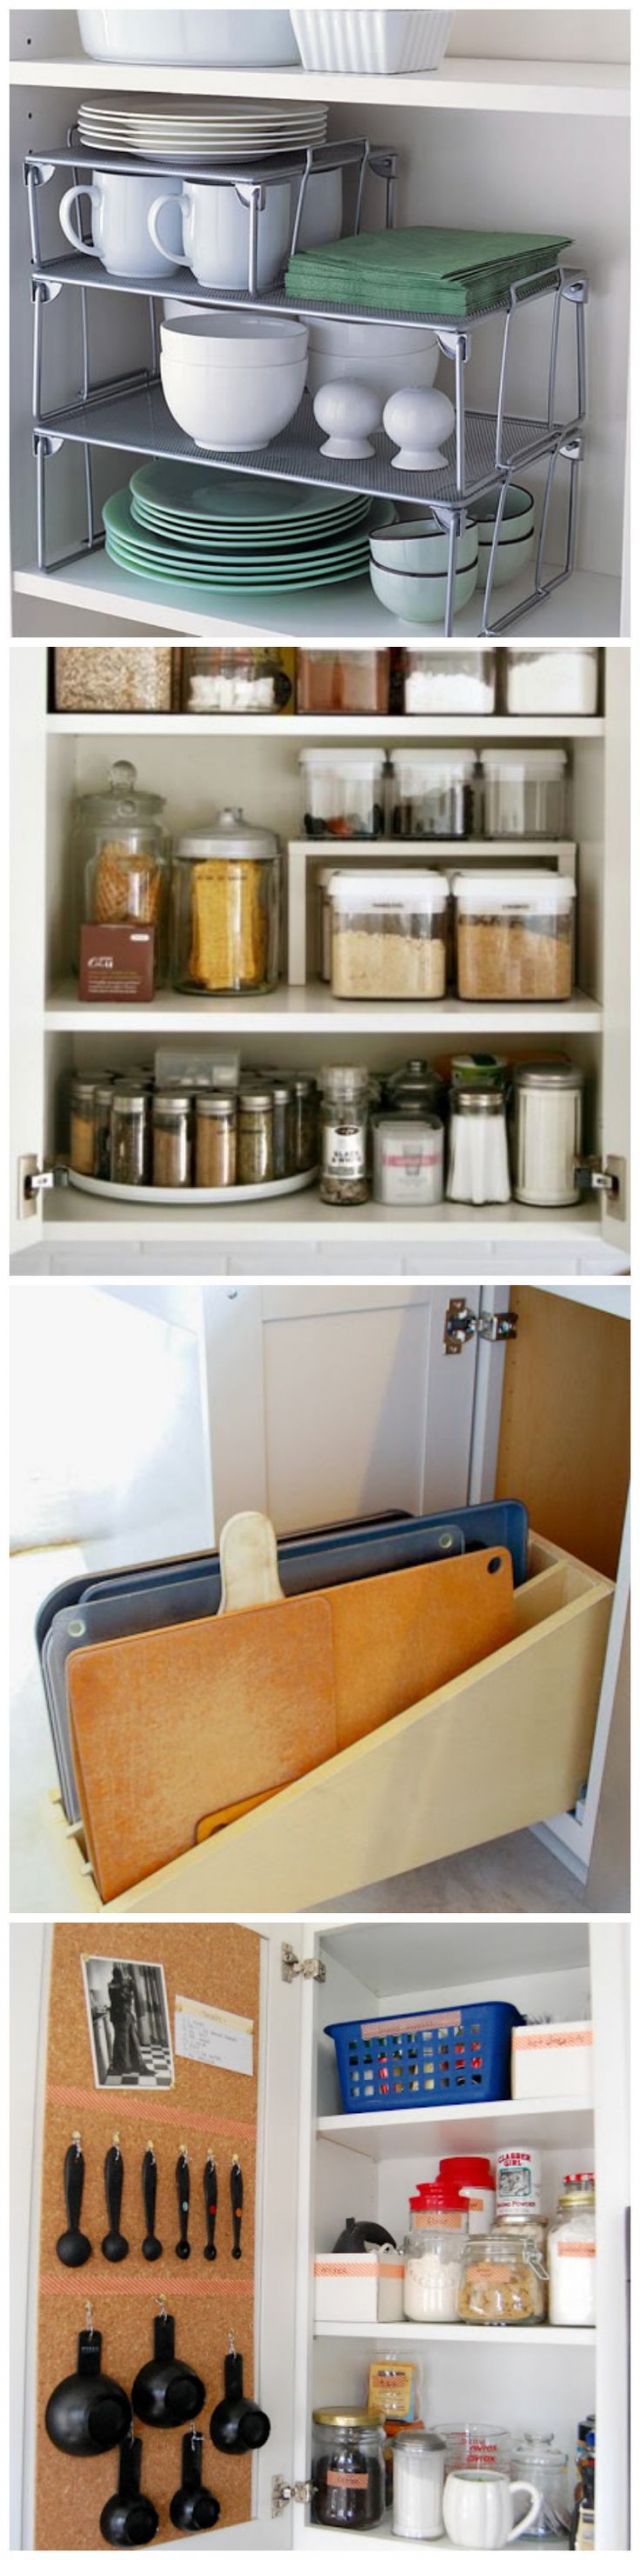 Kitchen Cabinet Organization Tips
 10 Genius Kitchen Cabinet Organizing Ideas Home Decor Idea